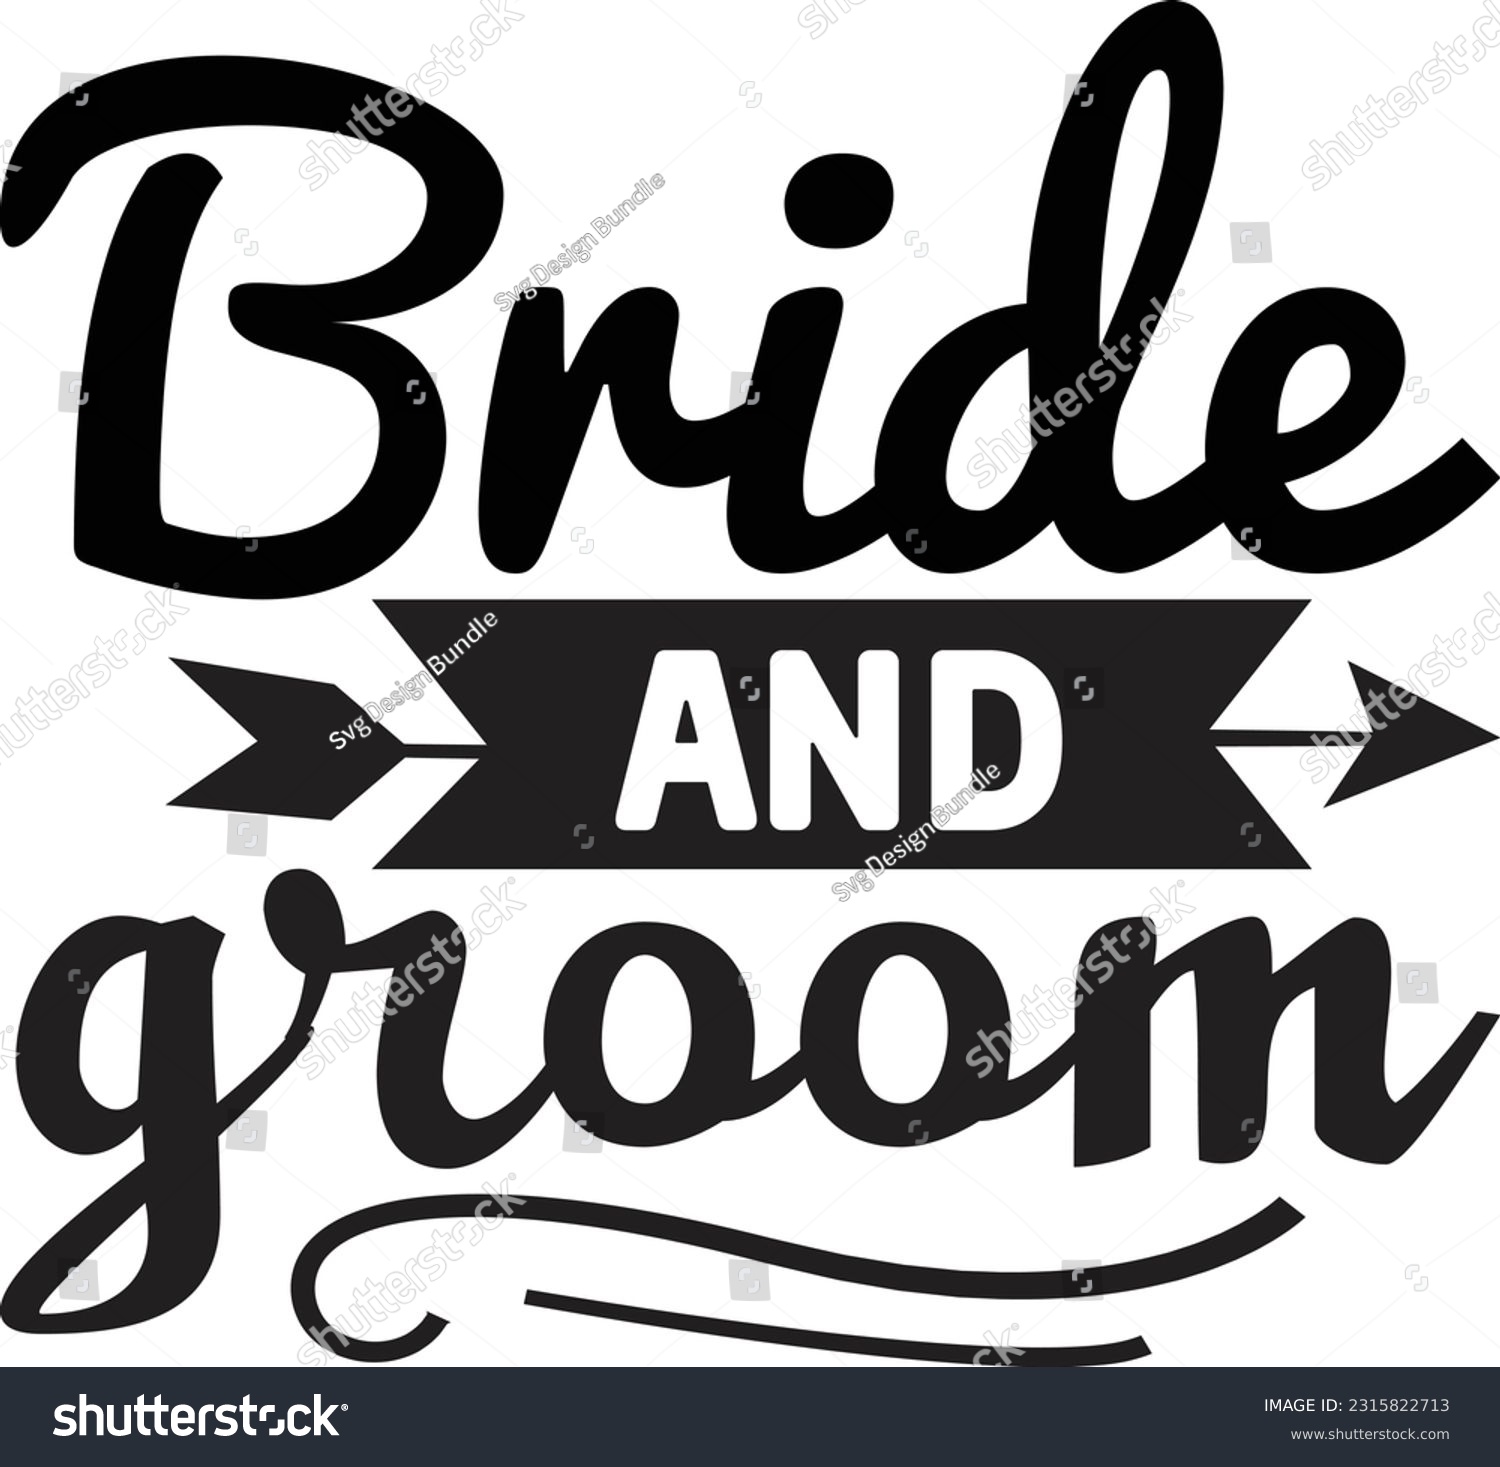 SVG of Bride and groom svg, wedding SVG Design, wedding quotes design svg, wedding SVG Design, wedding quotes design svg